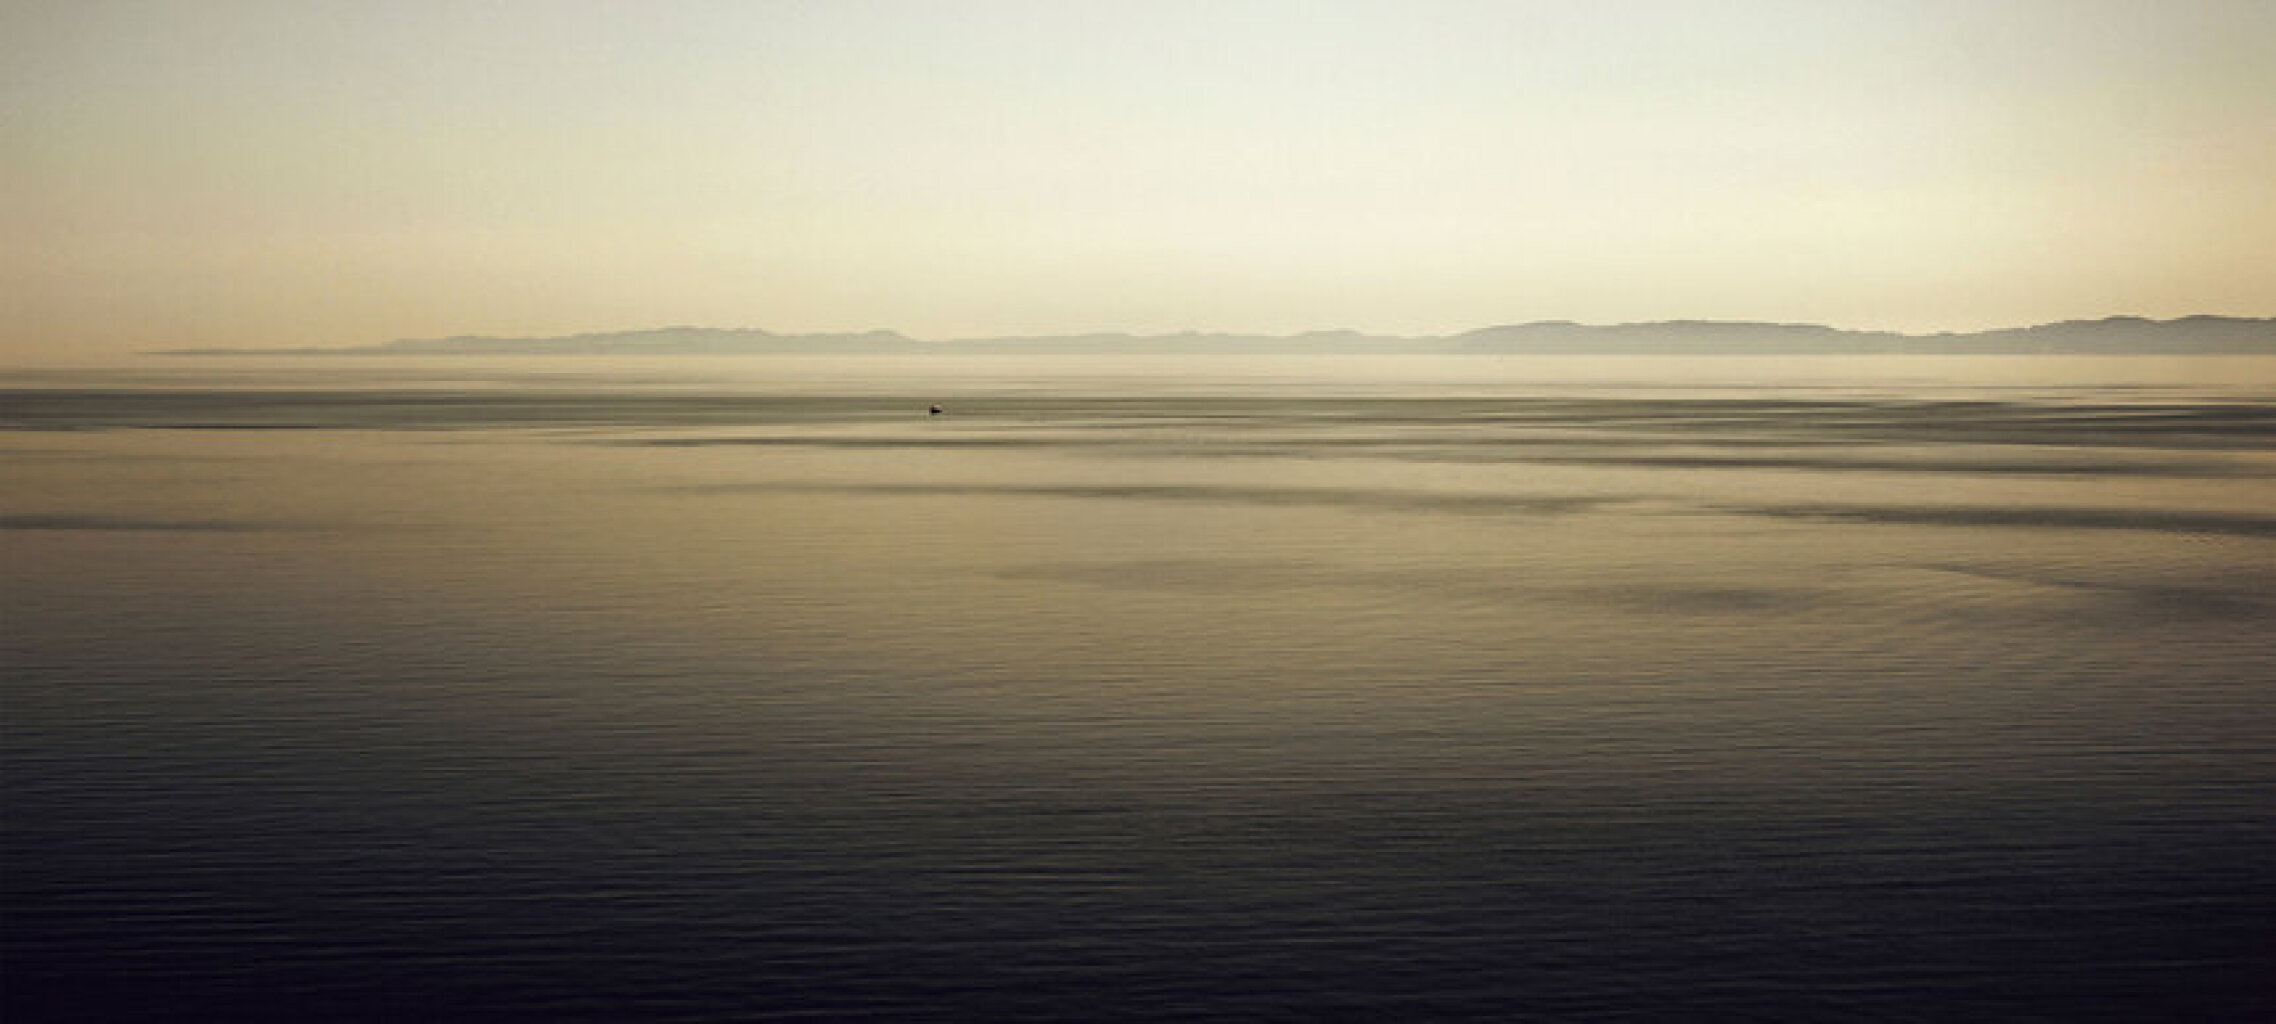 Quadro Mar Corfu 2 por Fabiano Scussel Oliveira -  CATEGORIAS